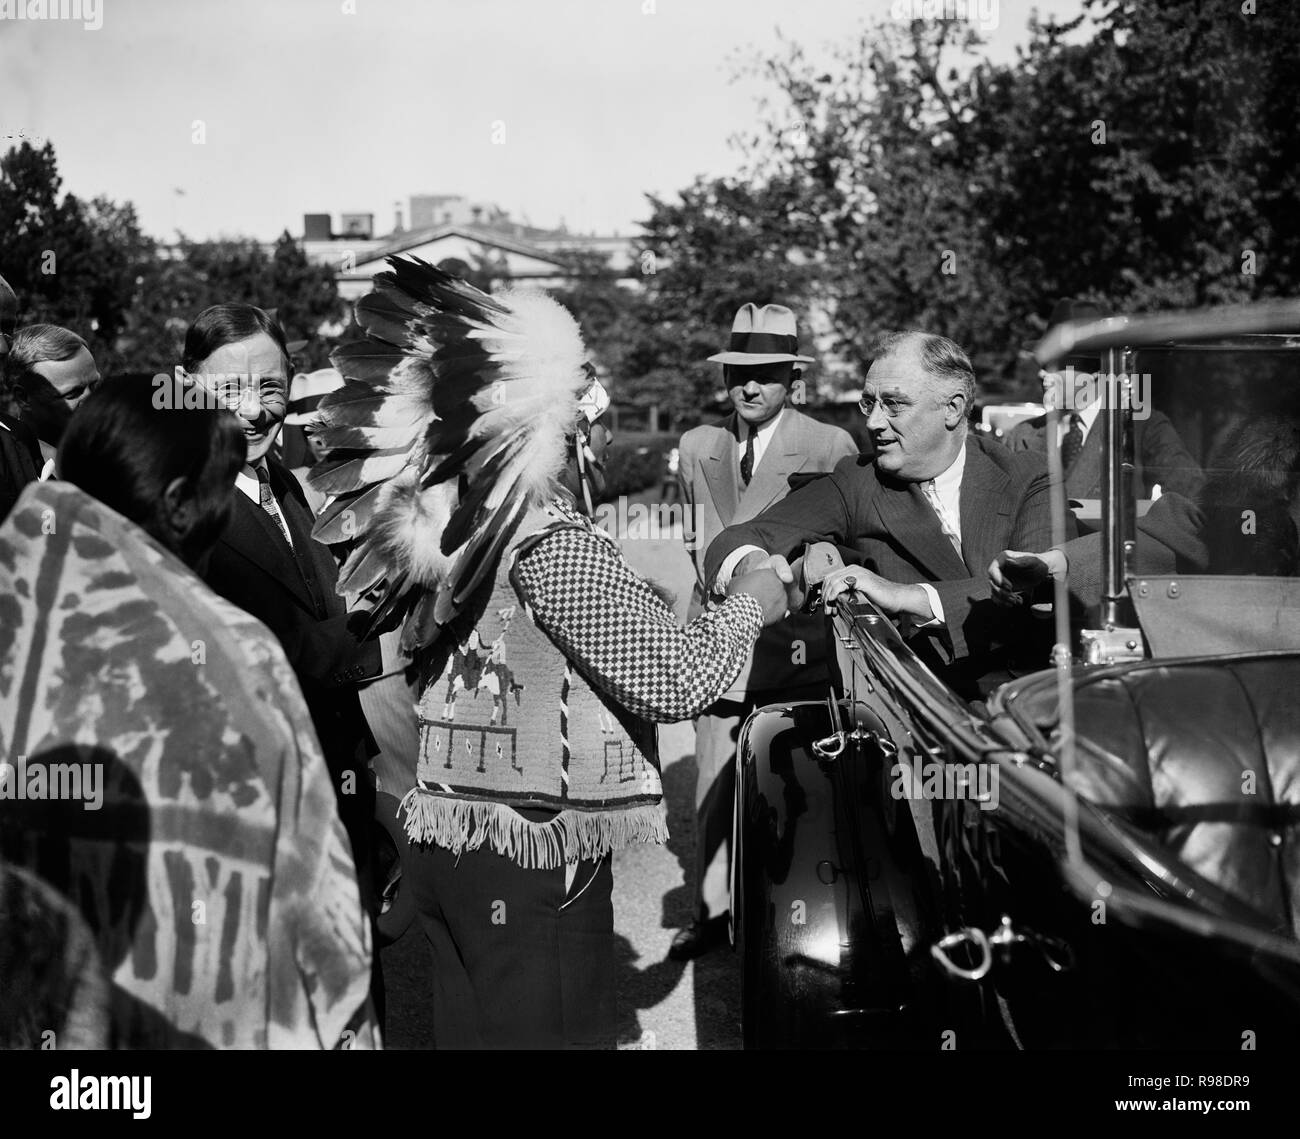 Stati Uniti Il presidente Franklin Roosevelt saluto Indiani Pueblo seduti in auto convertibili, Washington DC, USA, Harris & Ewing, 1936 Foto Stock